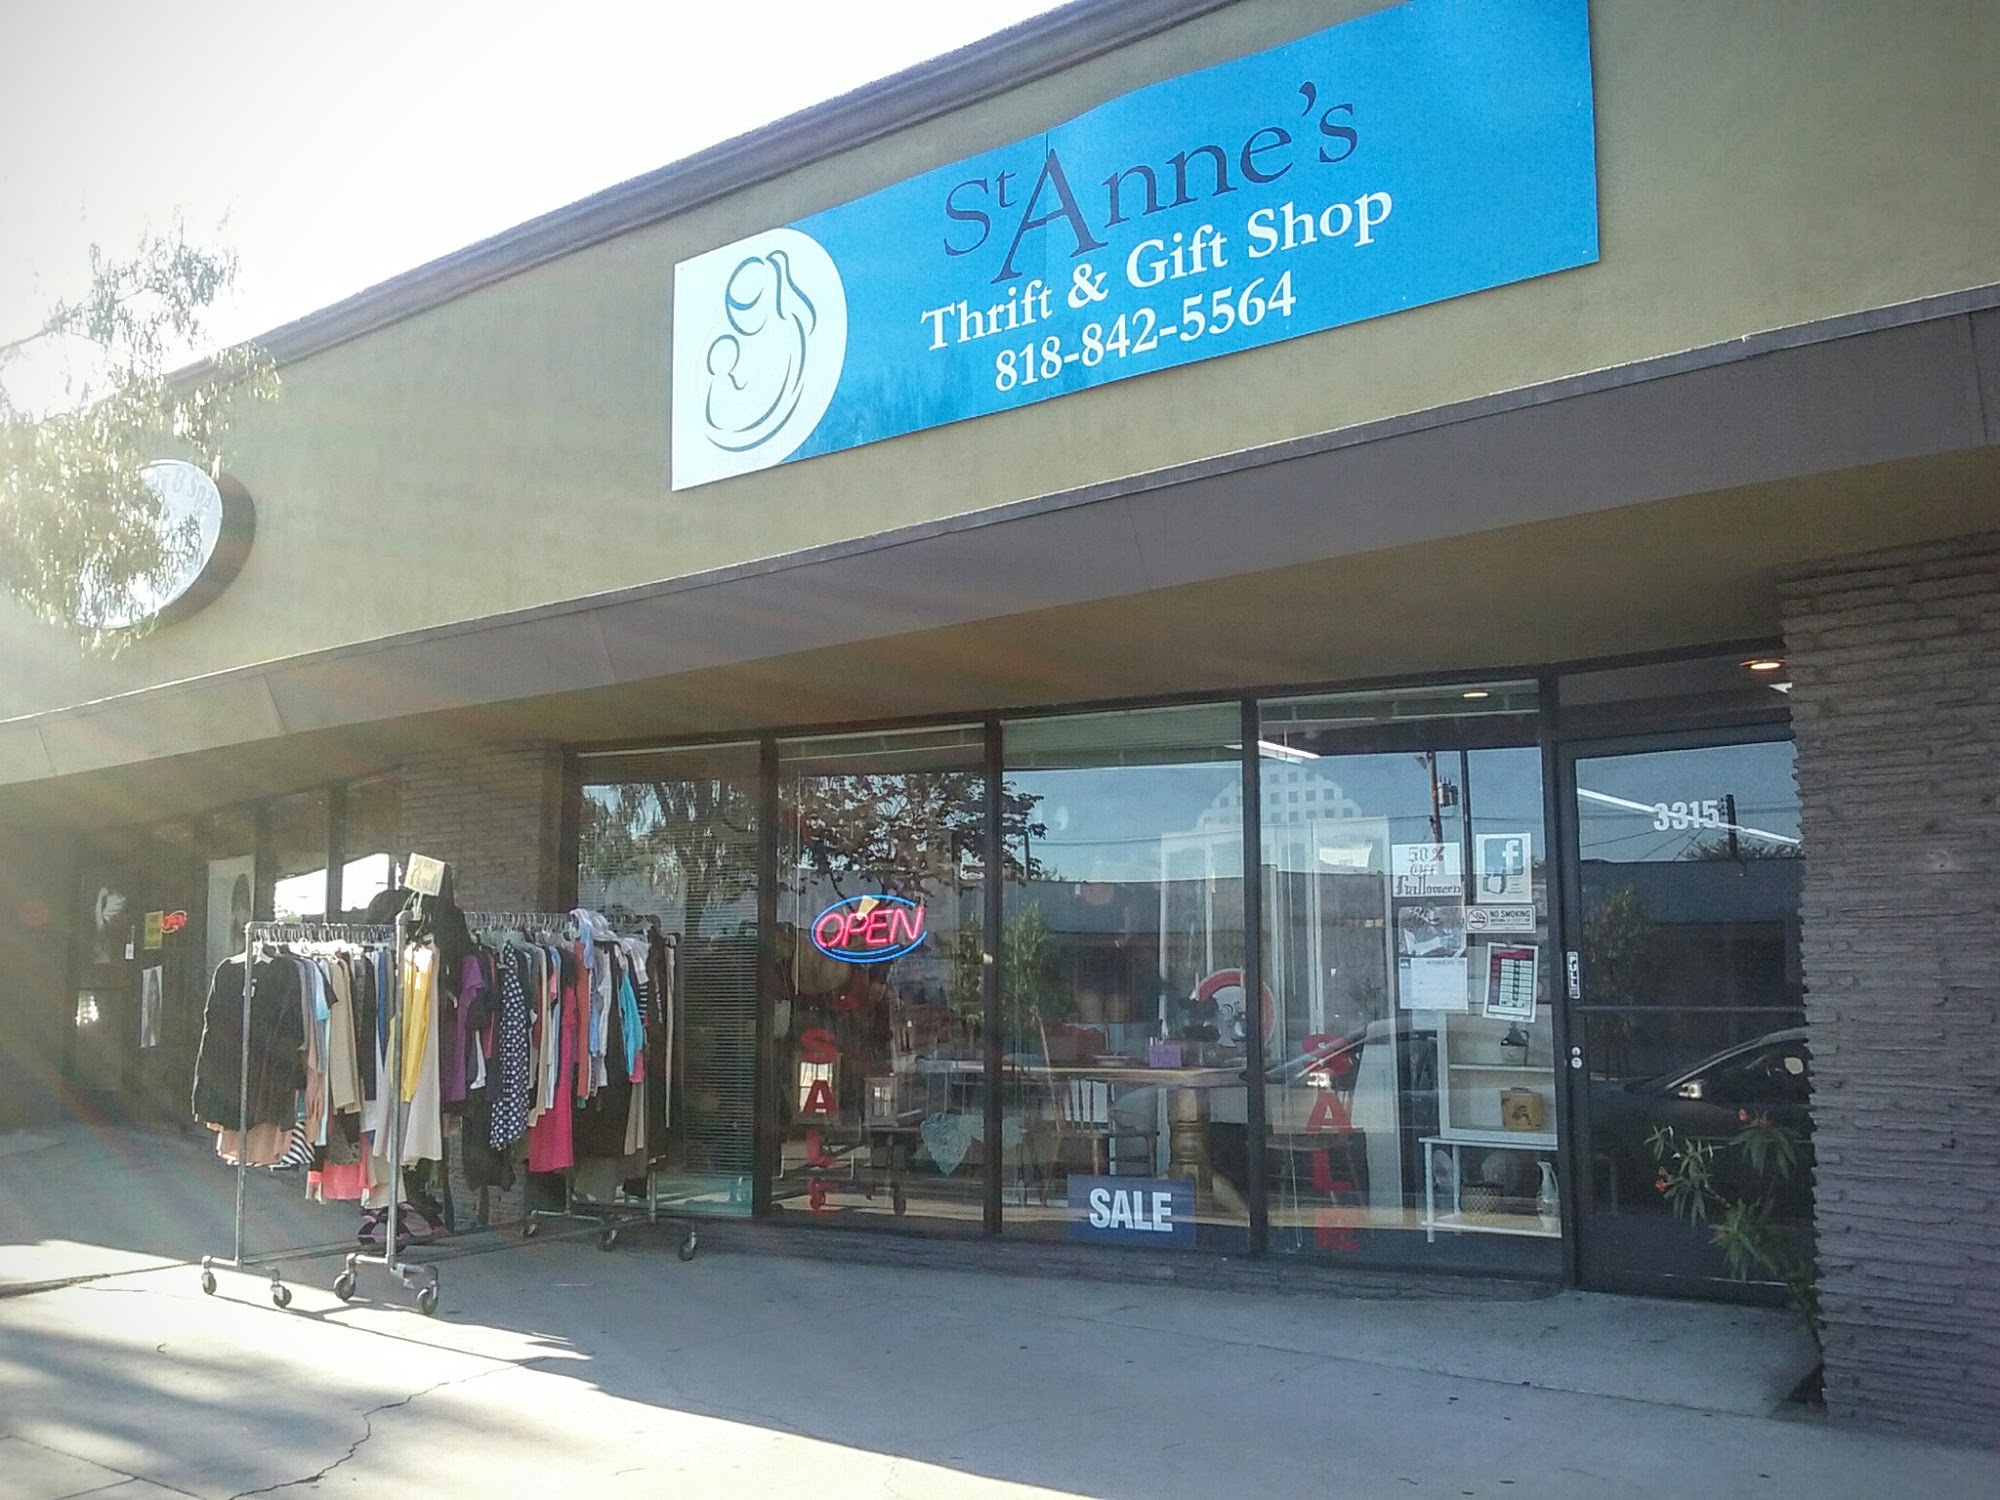 St. Anne's Thrift & Gift Shop